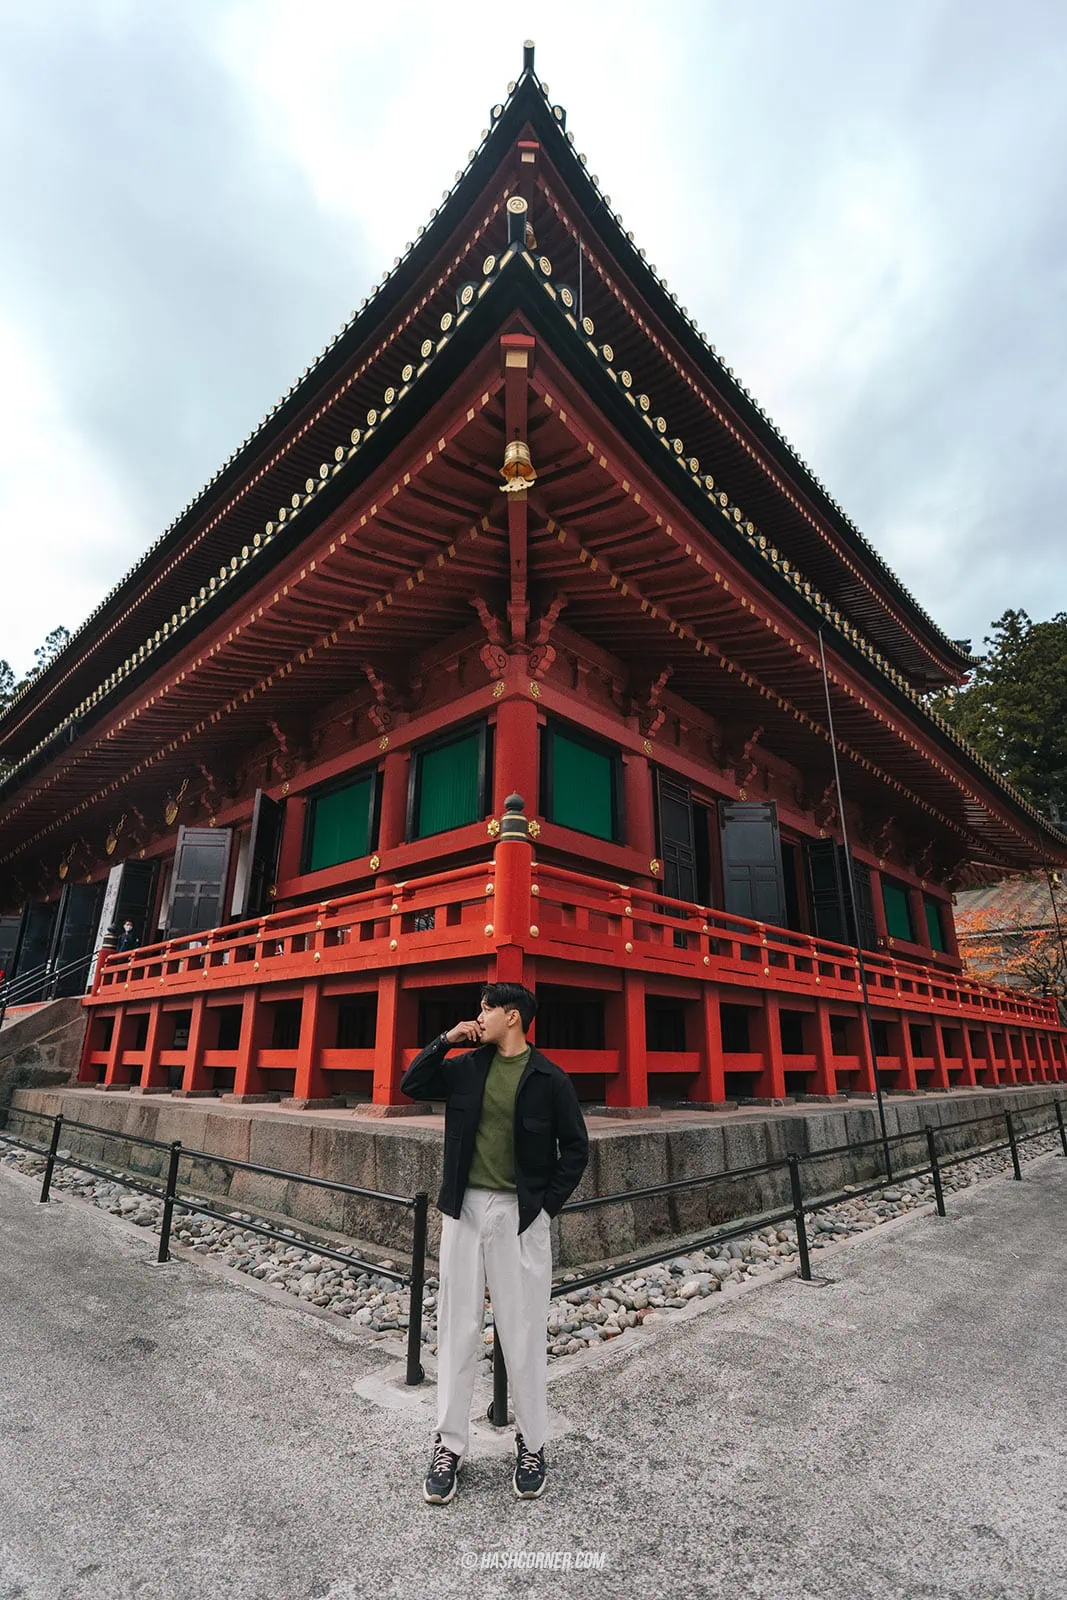 รีวิว วัดรินโนจิ (Rinnoji Temple) x นิกโก้ วัดมรดกโลก 1,250 ปี